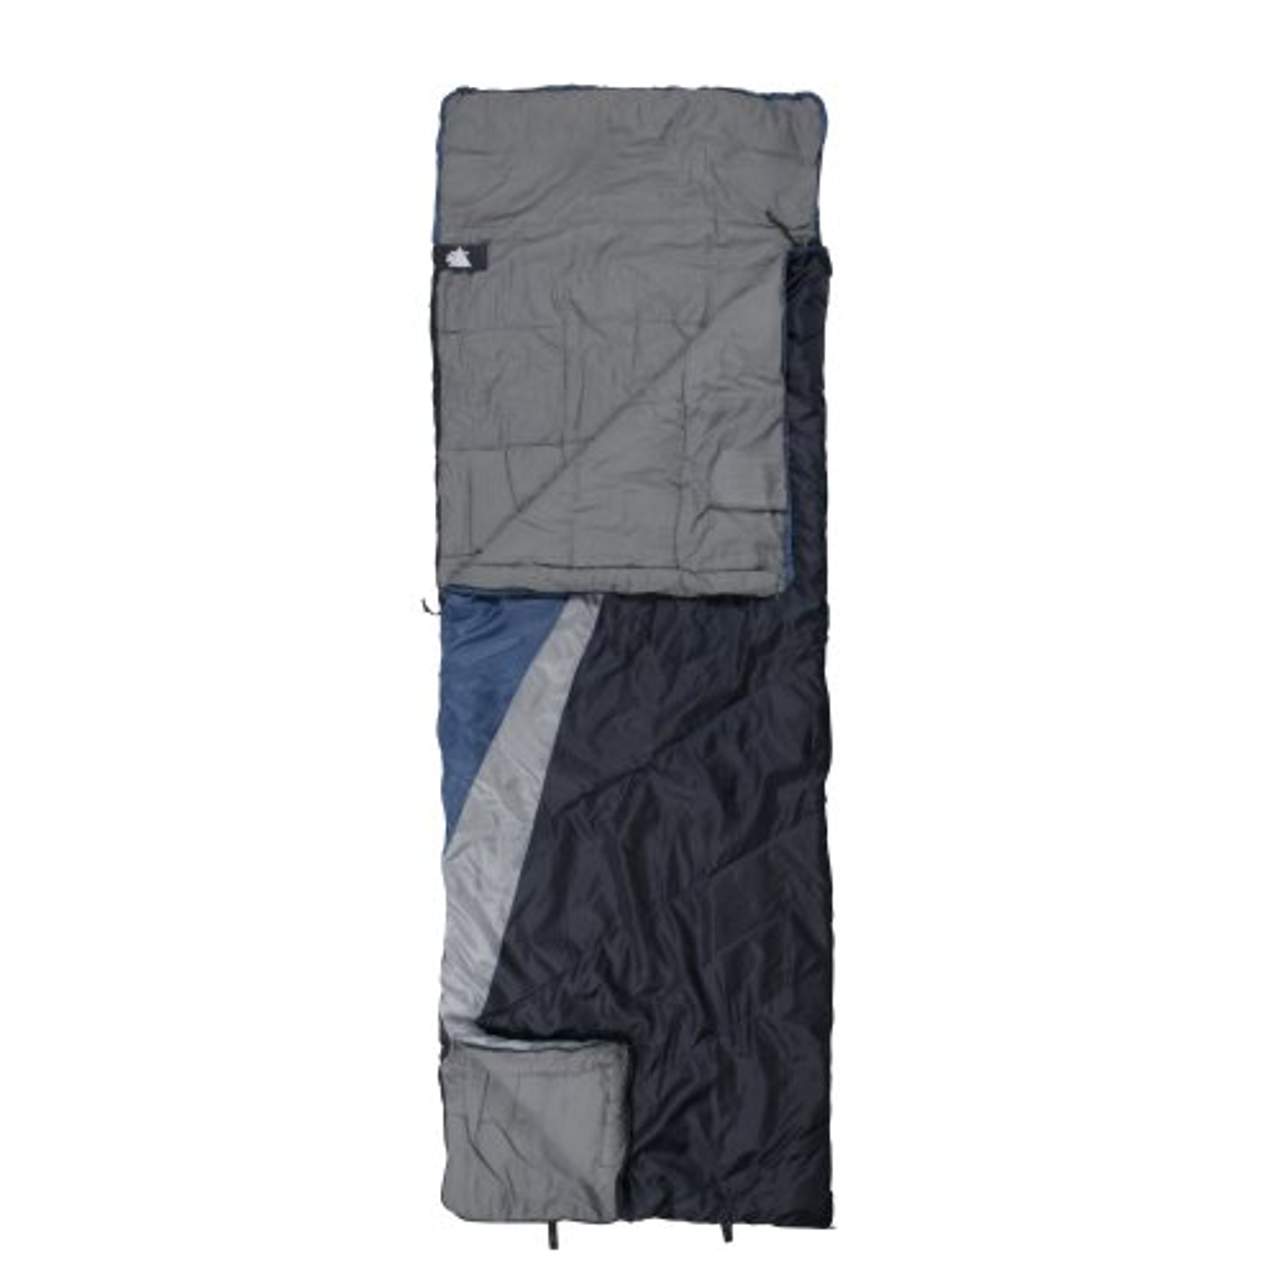 10T Schlafsack Rockfort -8° warm weich 1500g leicht XL Deckenschlafsack